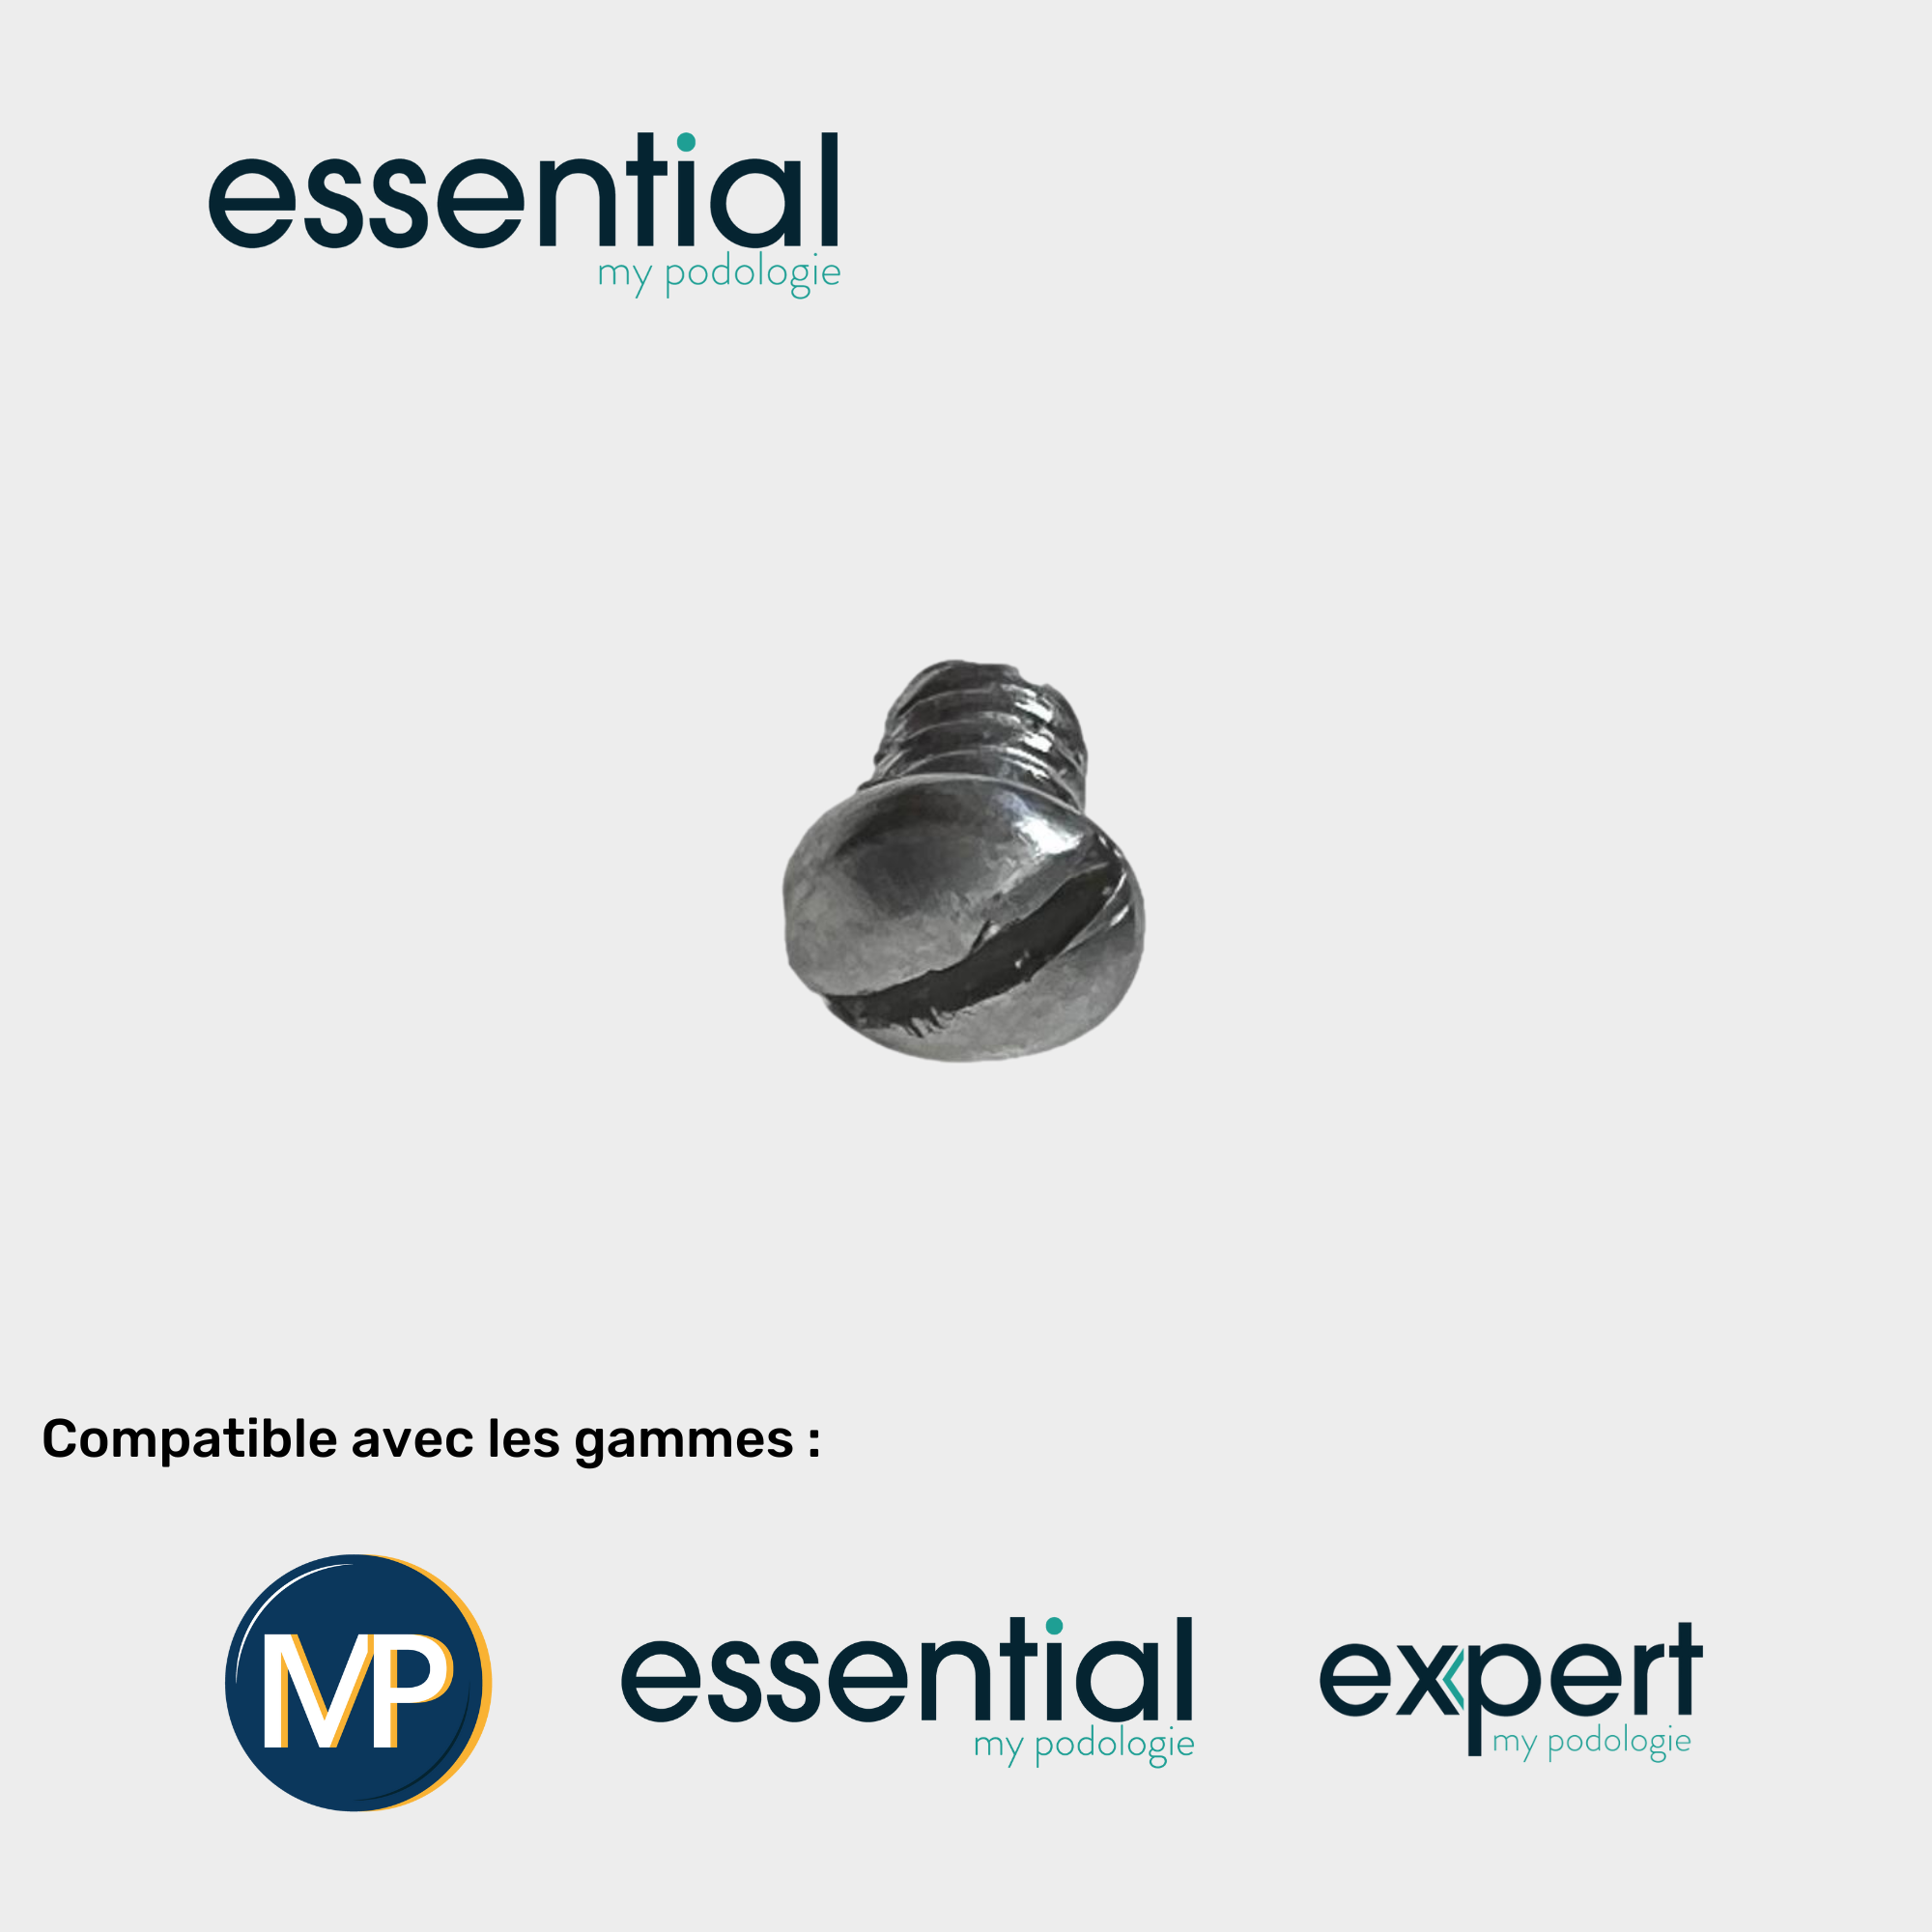 Vis de rechange pour pince Mp, Essential et Expert - Essential by My Podologie